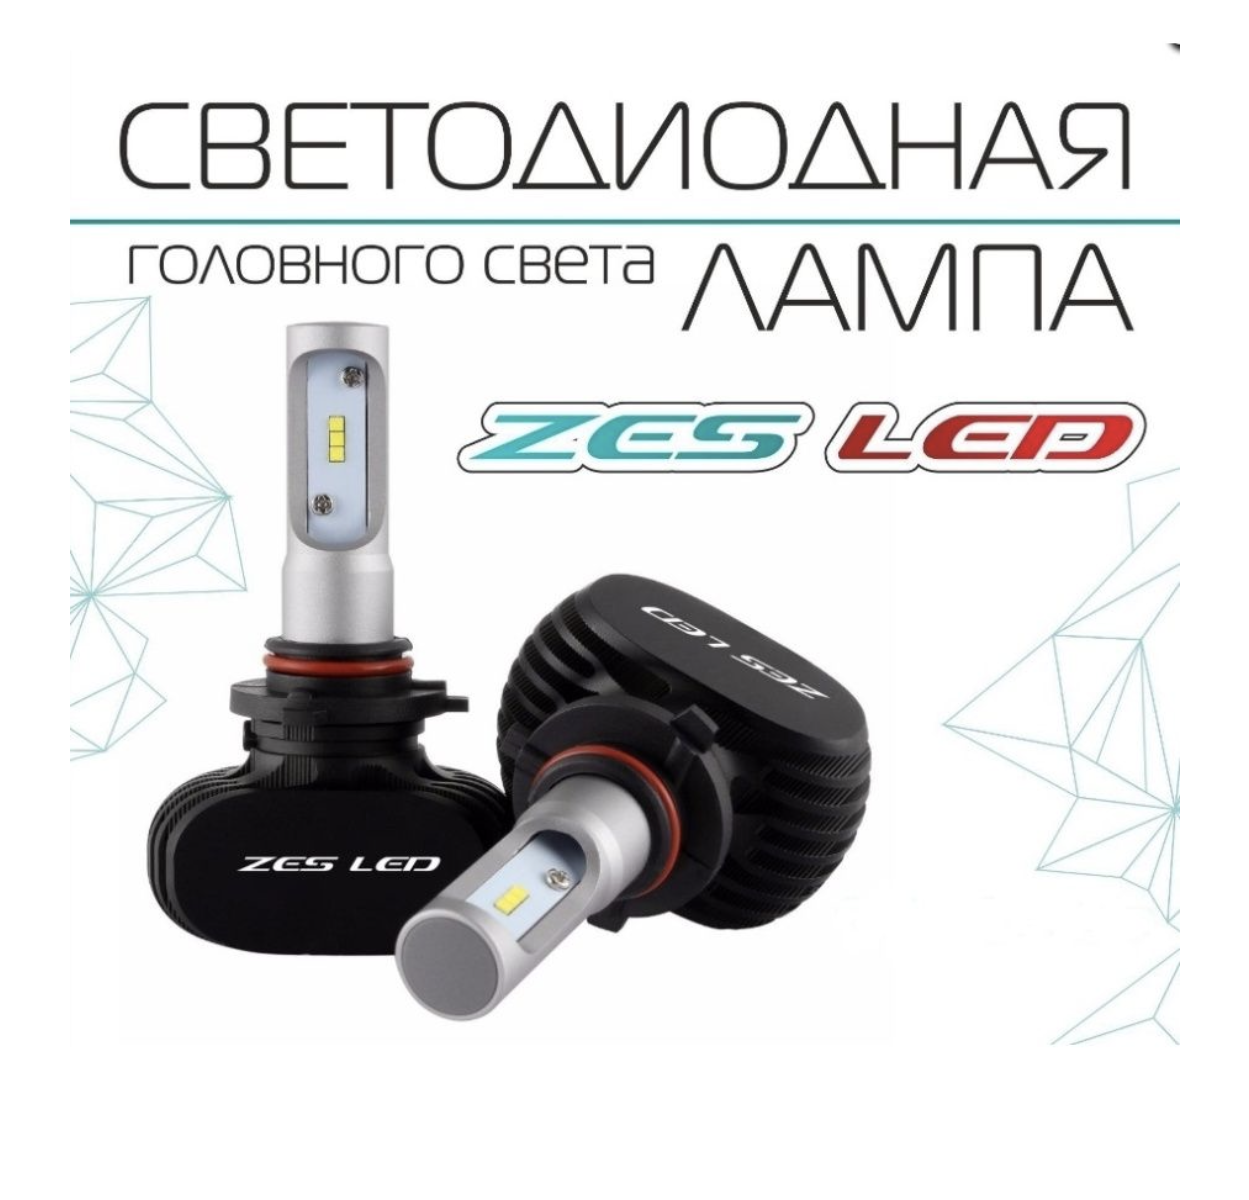 Светодиодная лампа Viper H3 ZES LED 5500lm (радиатор) - фото